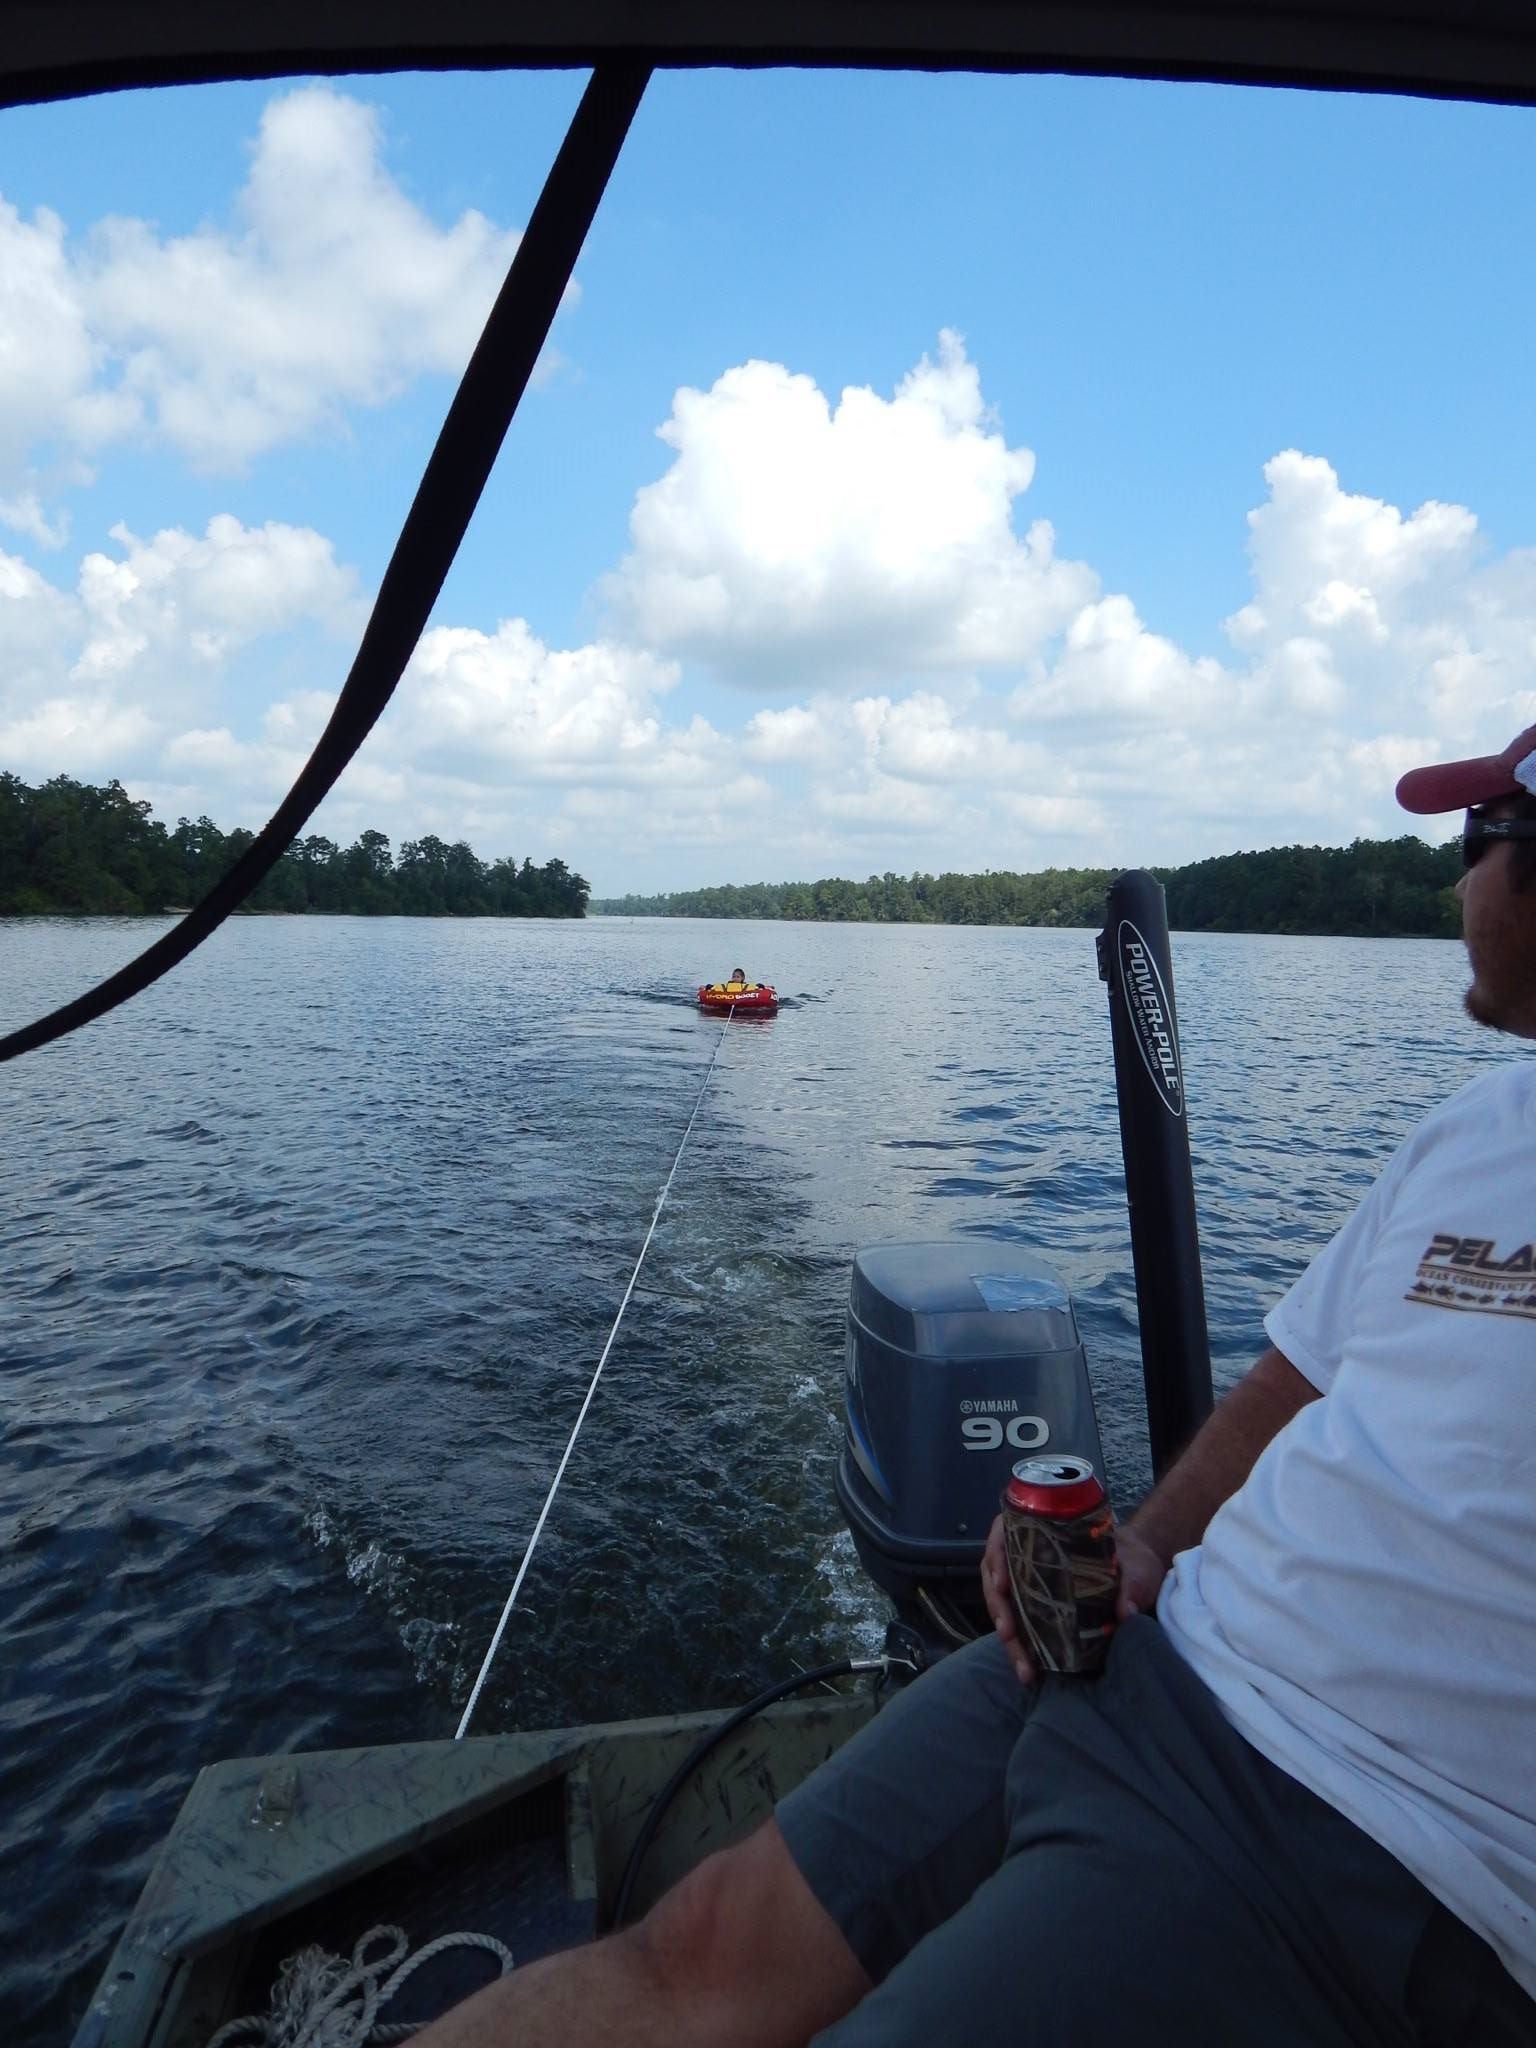 Tubing behind boat in lake